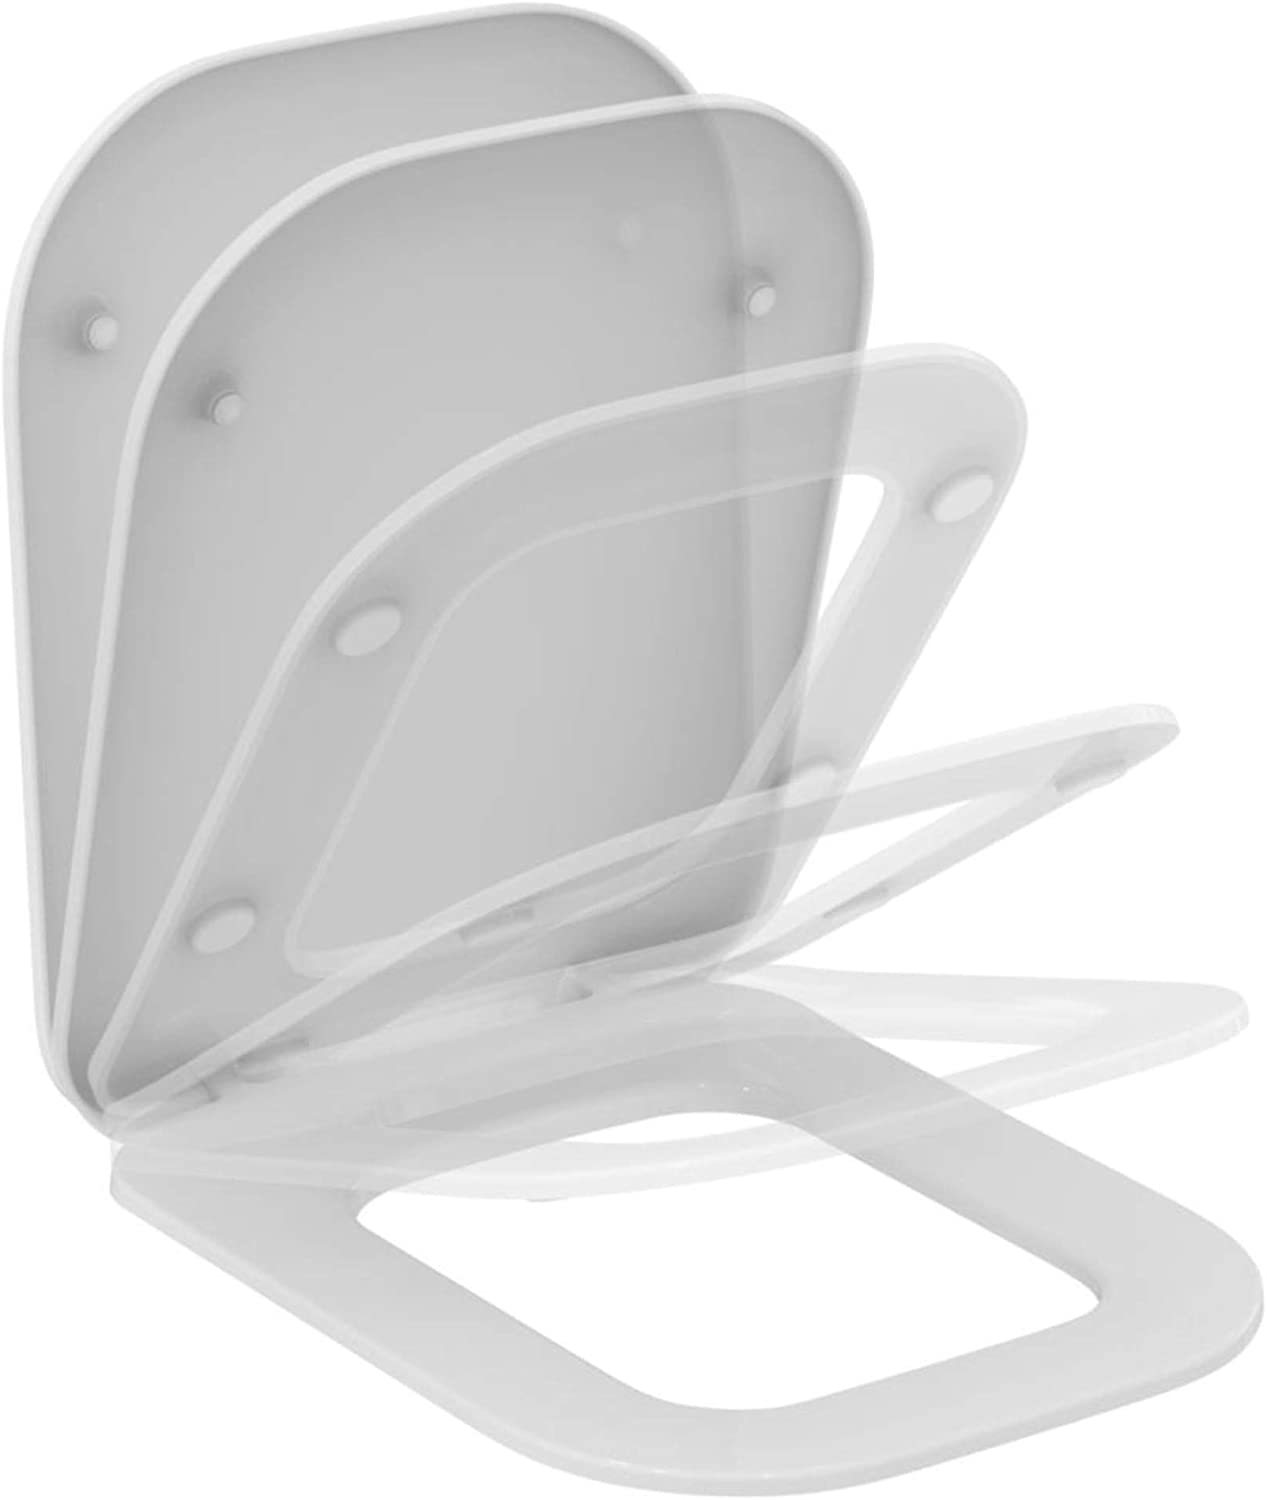 εικόνα του IDEAL STANDARD Tonic II toilet seat with cover and soft closing K706501 white